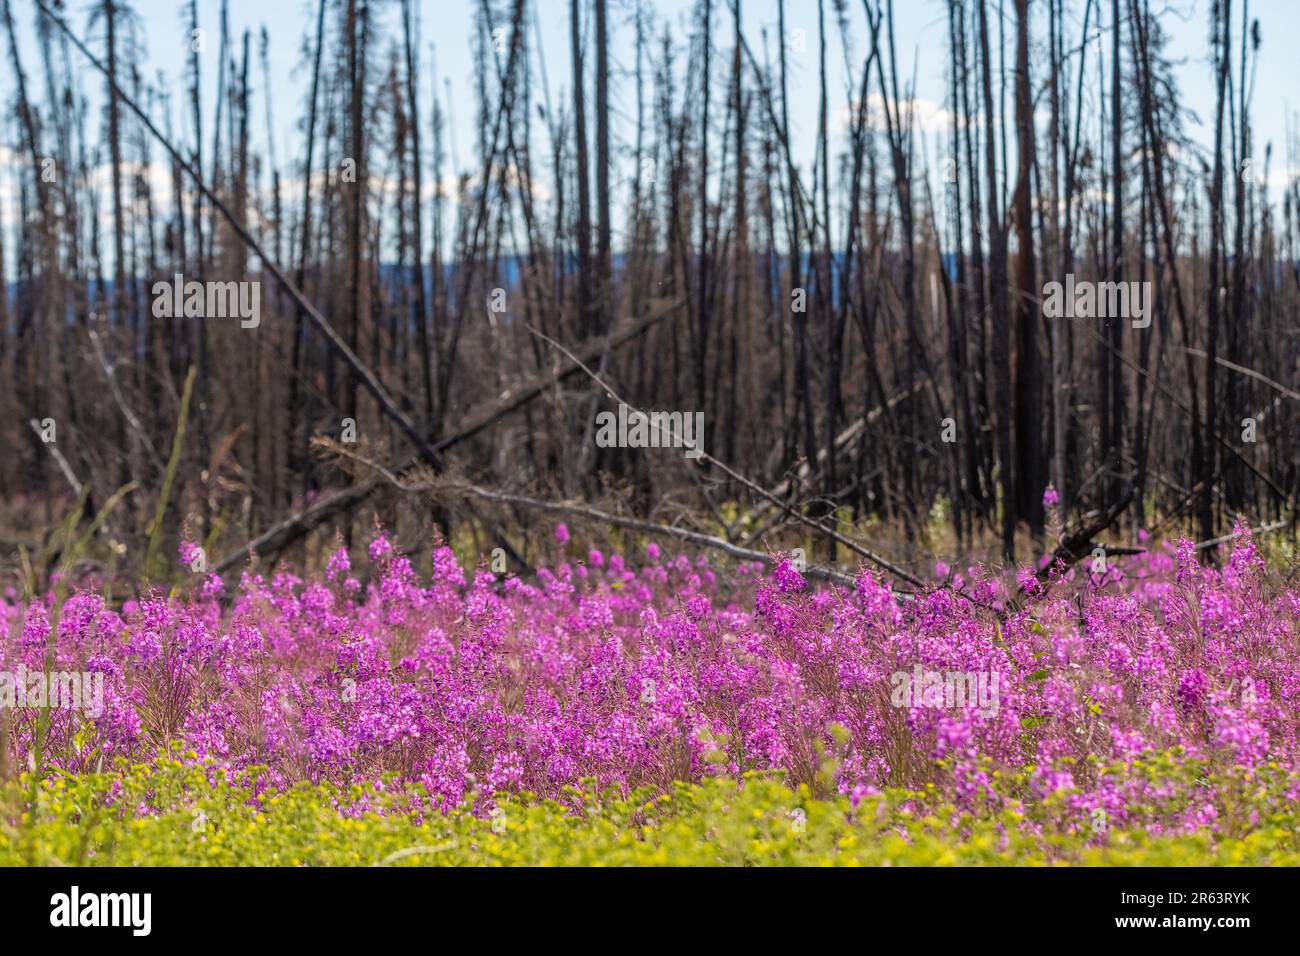 Wilde Feuerwebepflanzen, Blumen, die im Sommer nach einem Waldbrand im wilden Yukon Territory, Kanada, zu sehen sind, mit natürlicher Pink-, Lila- und Grünfarbe Stockfoto